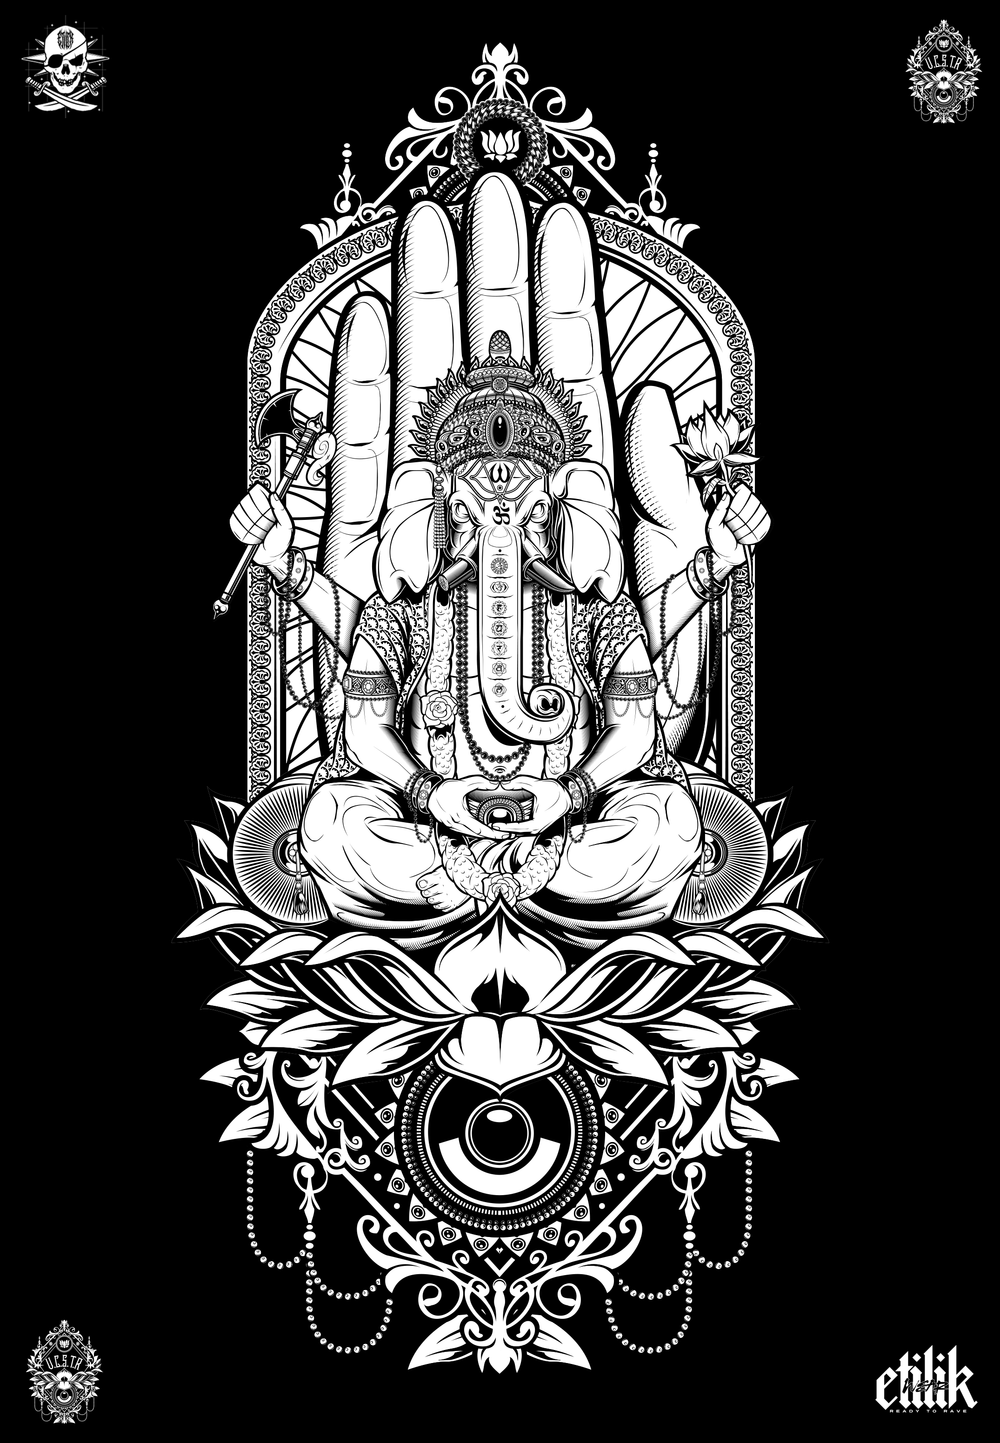 UCSTR - Ganesh - T-shirt - Etilik Wear 